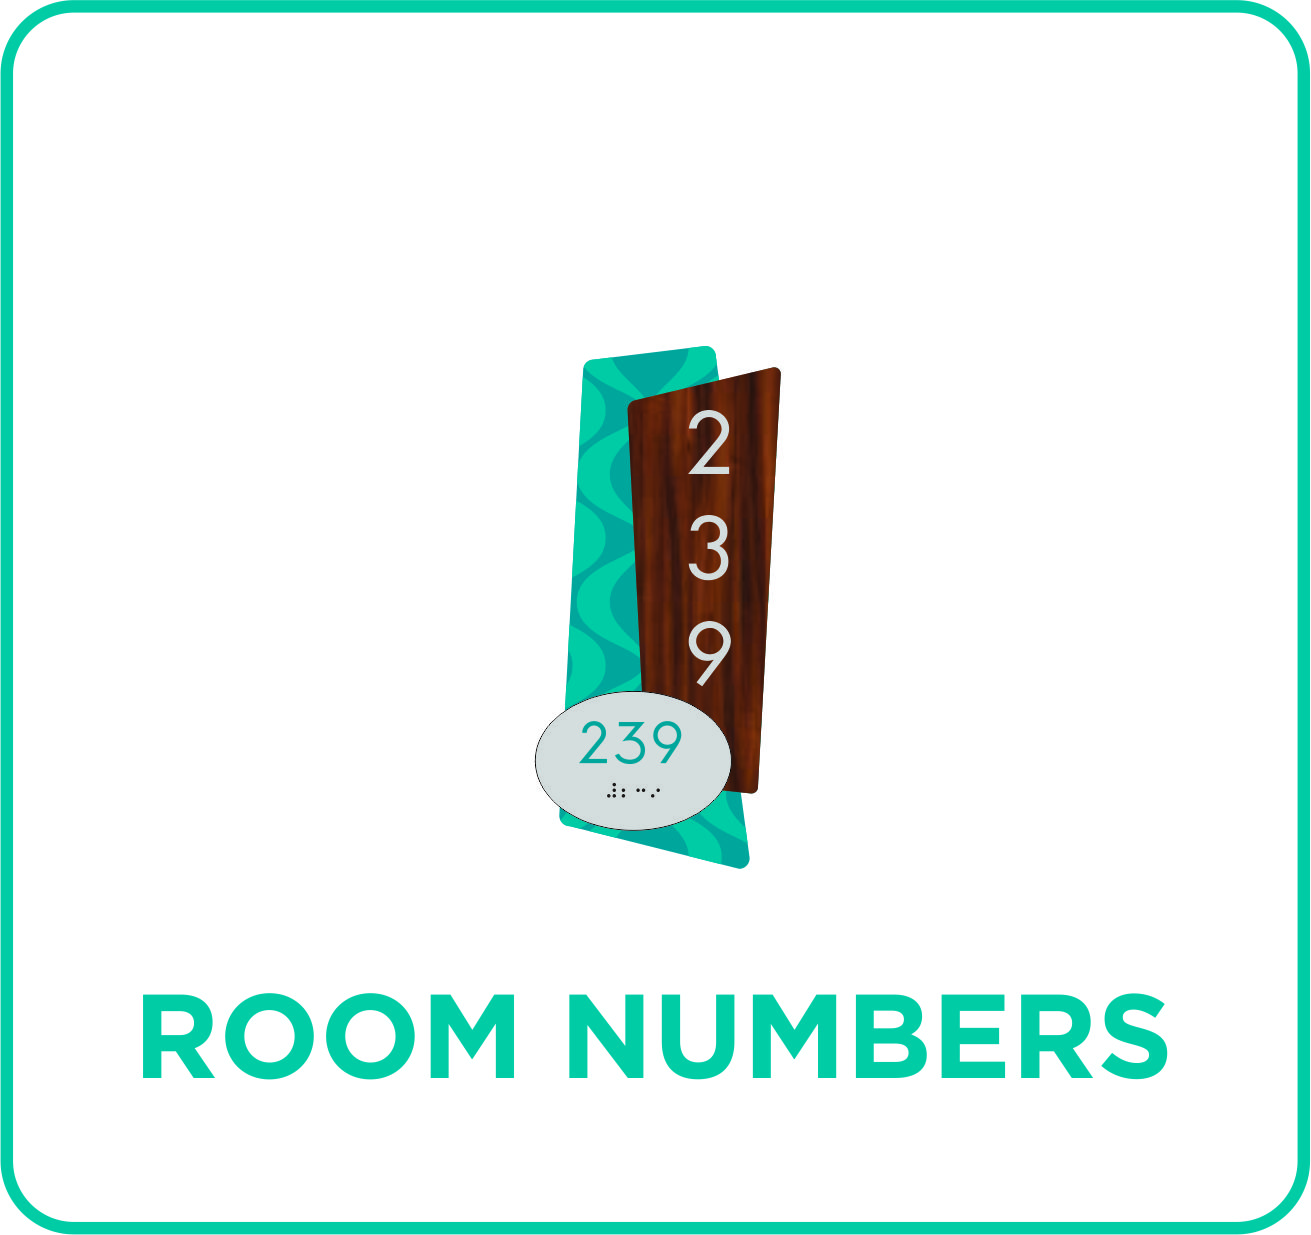 Signature Inn - Room Numbers